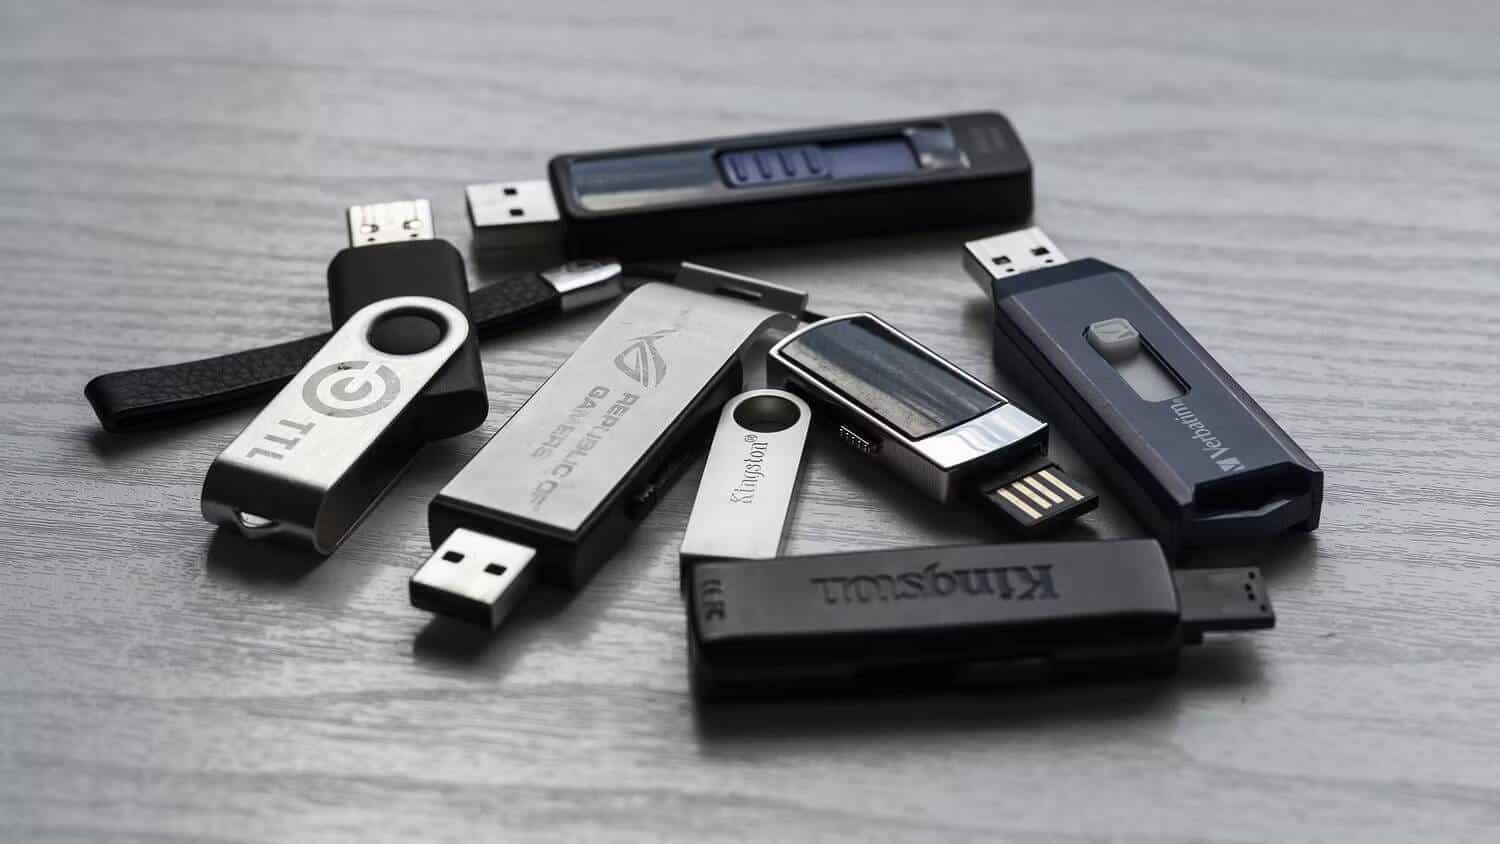 كيفية الحصول على البيانات من محرك أقراص USB قديم أو مُعطل - شروحات